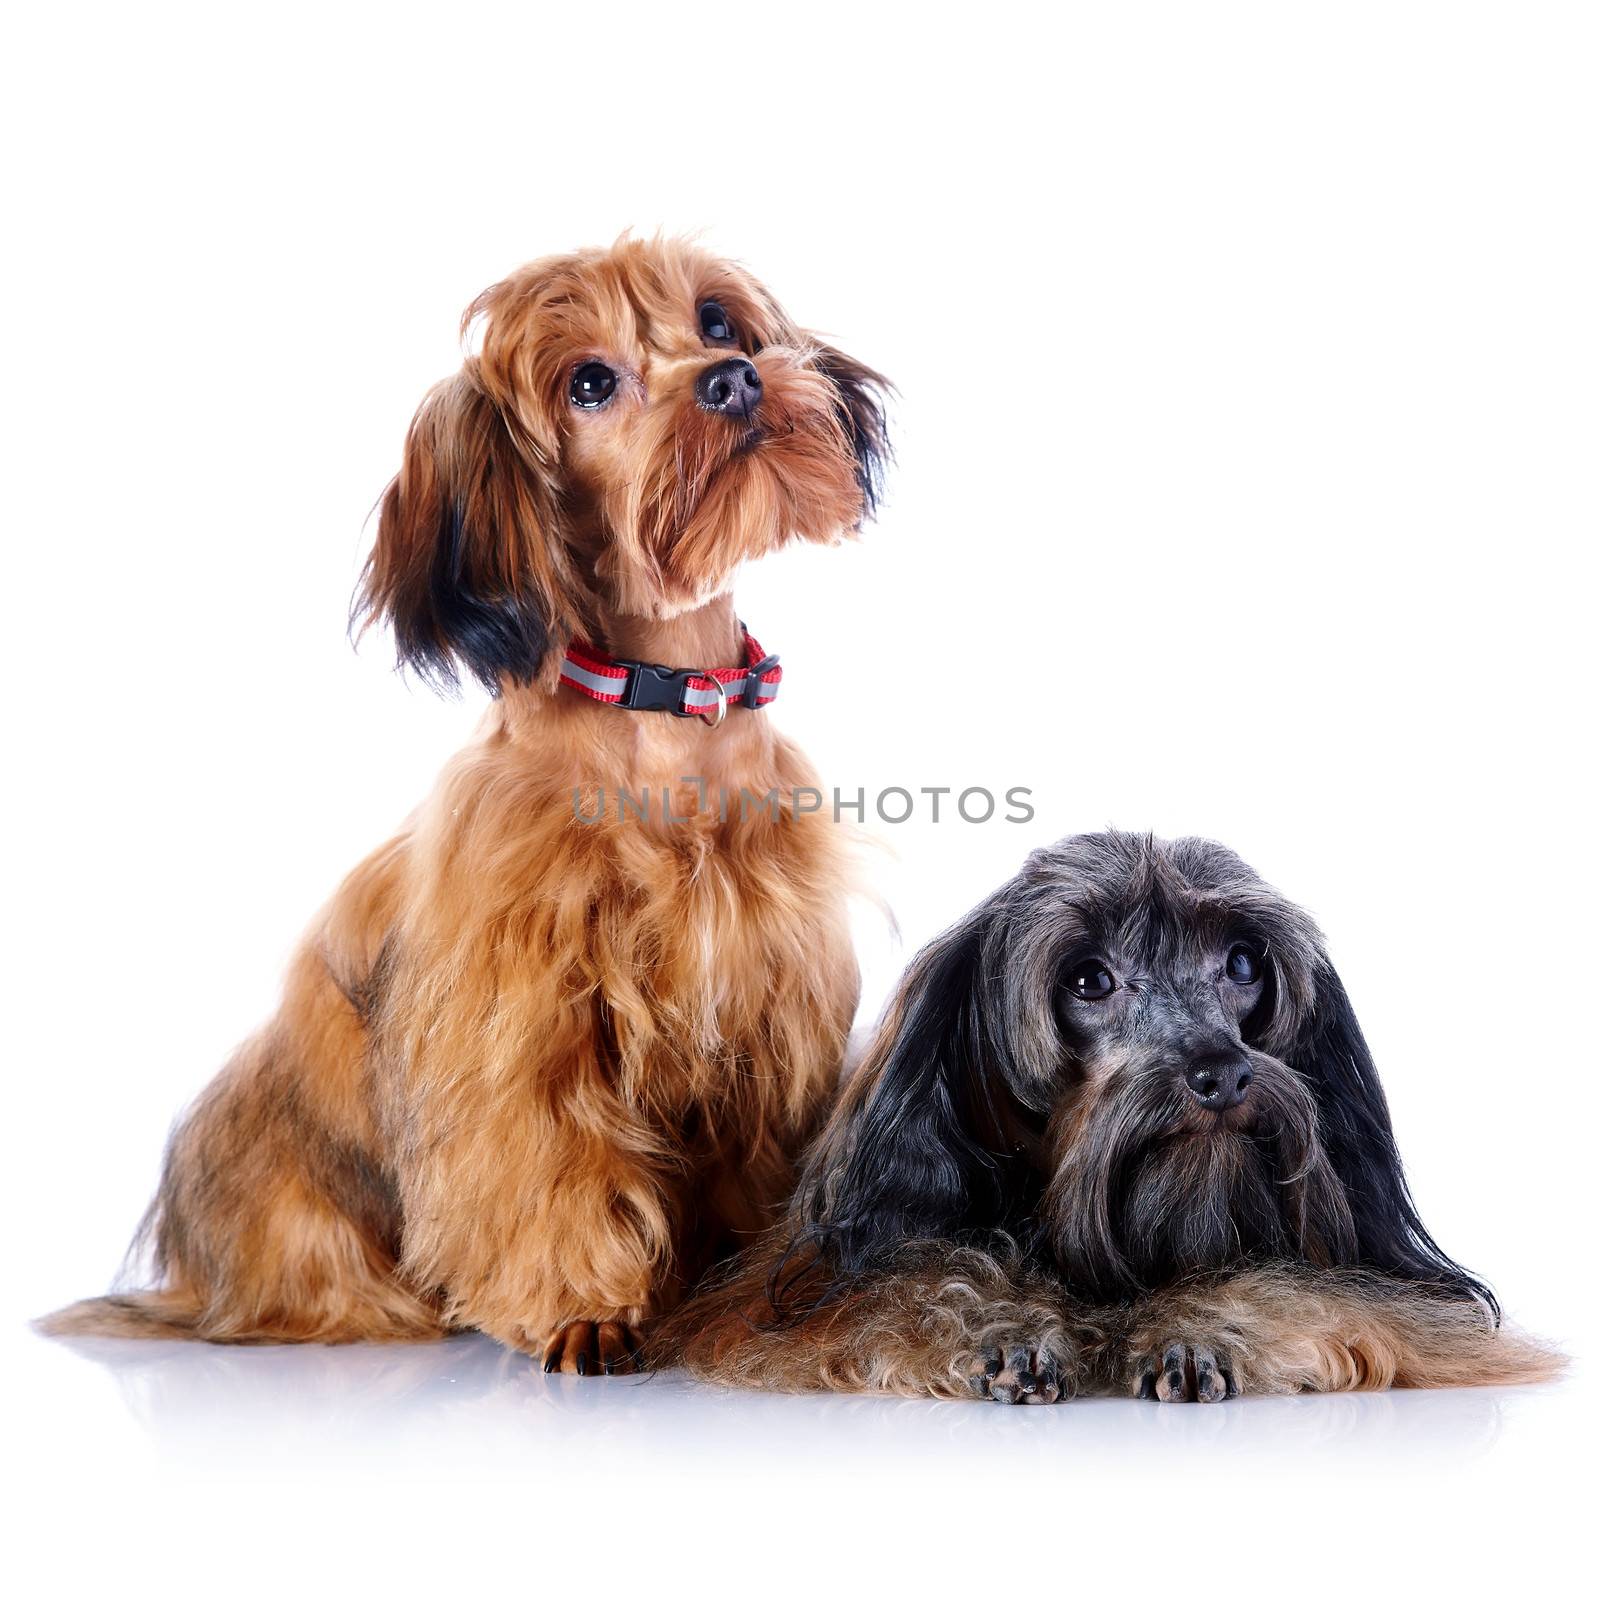 Two decorative doggies. by Azaliya